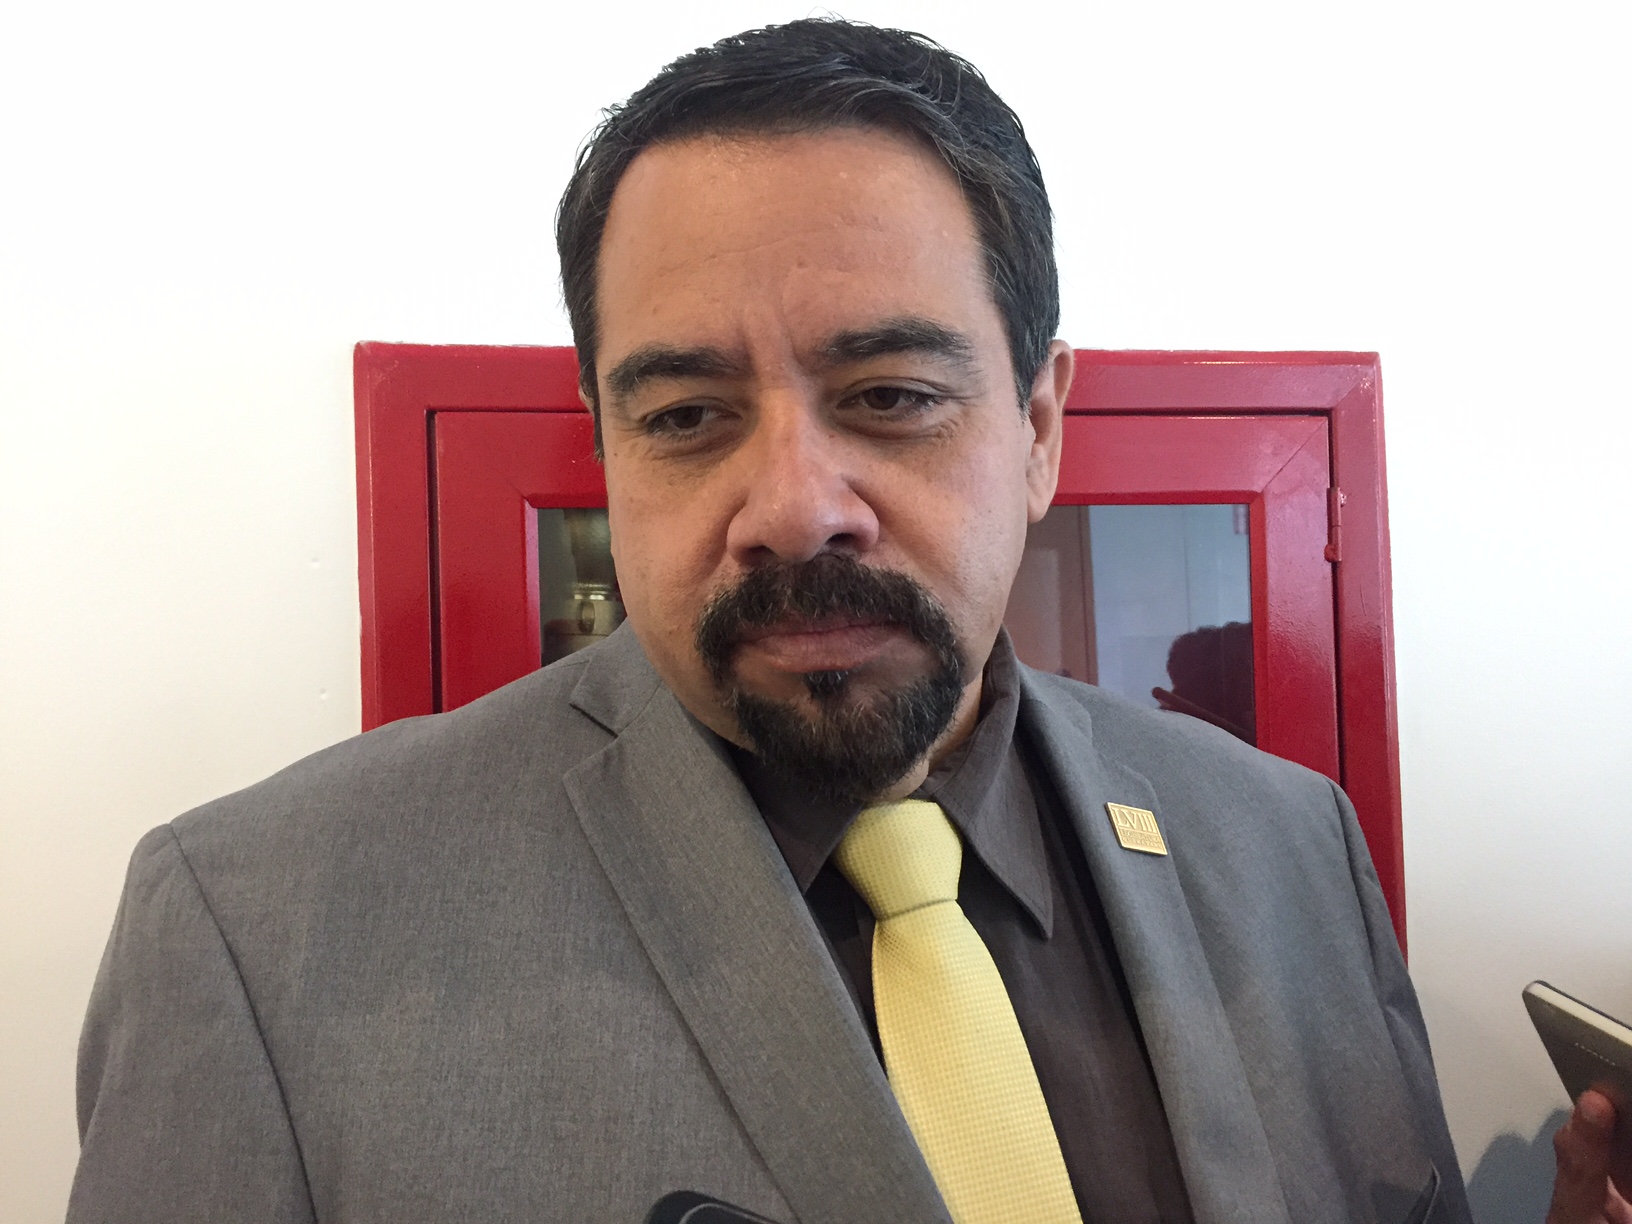  Lázaro Sánchez Tapia remarca que PRD ha impulsado candidaturas ciudadanas desde 2003